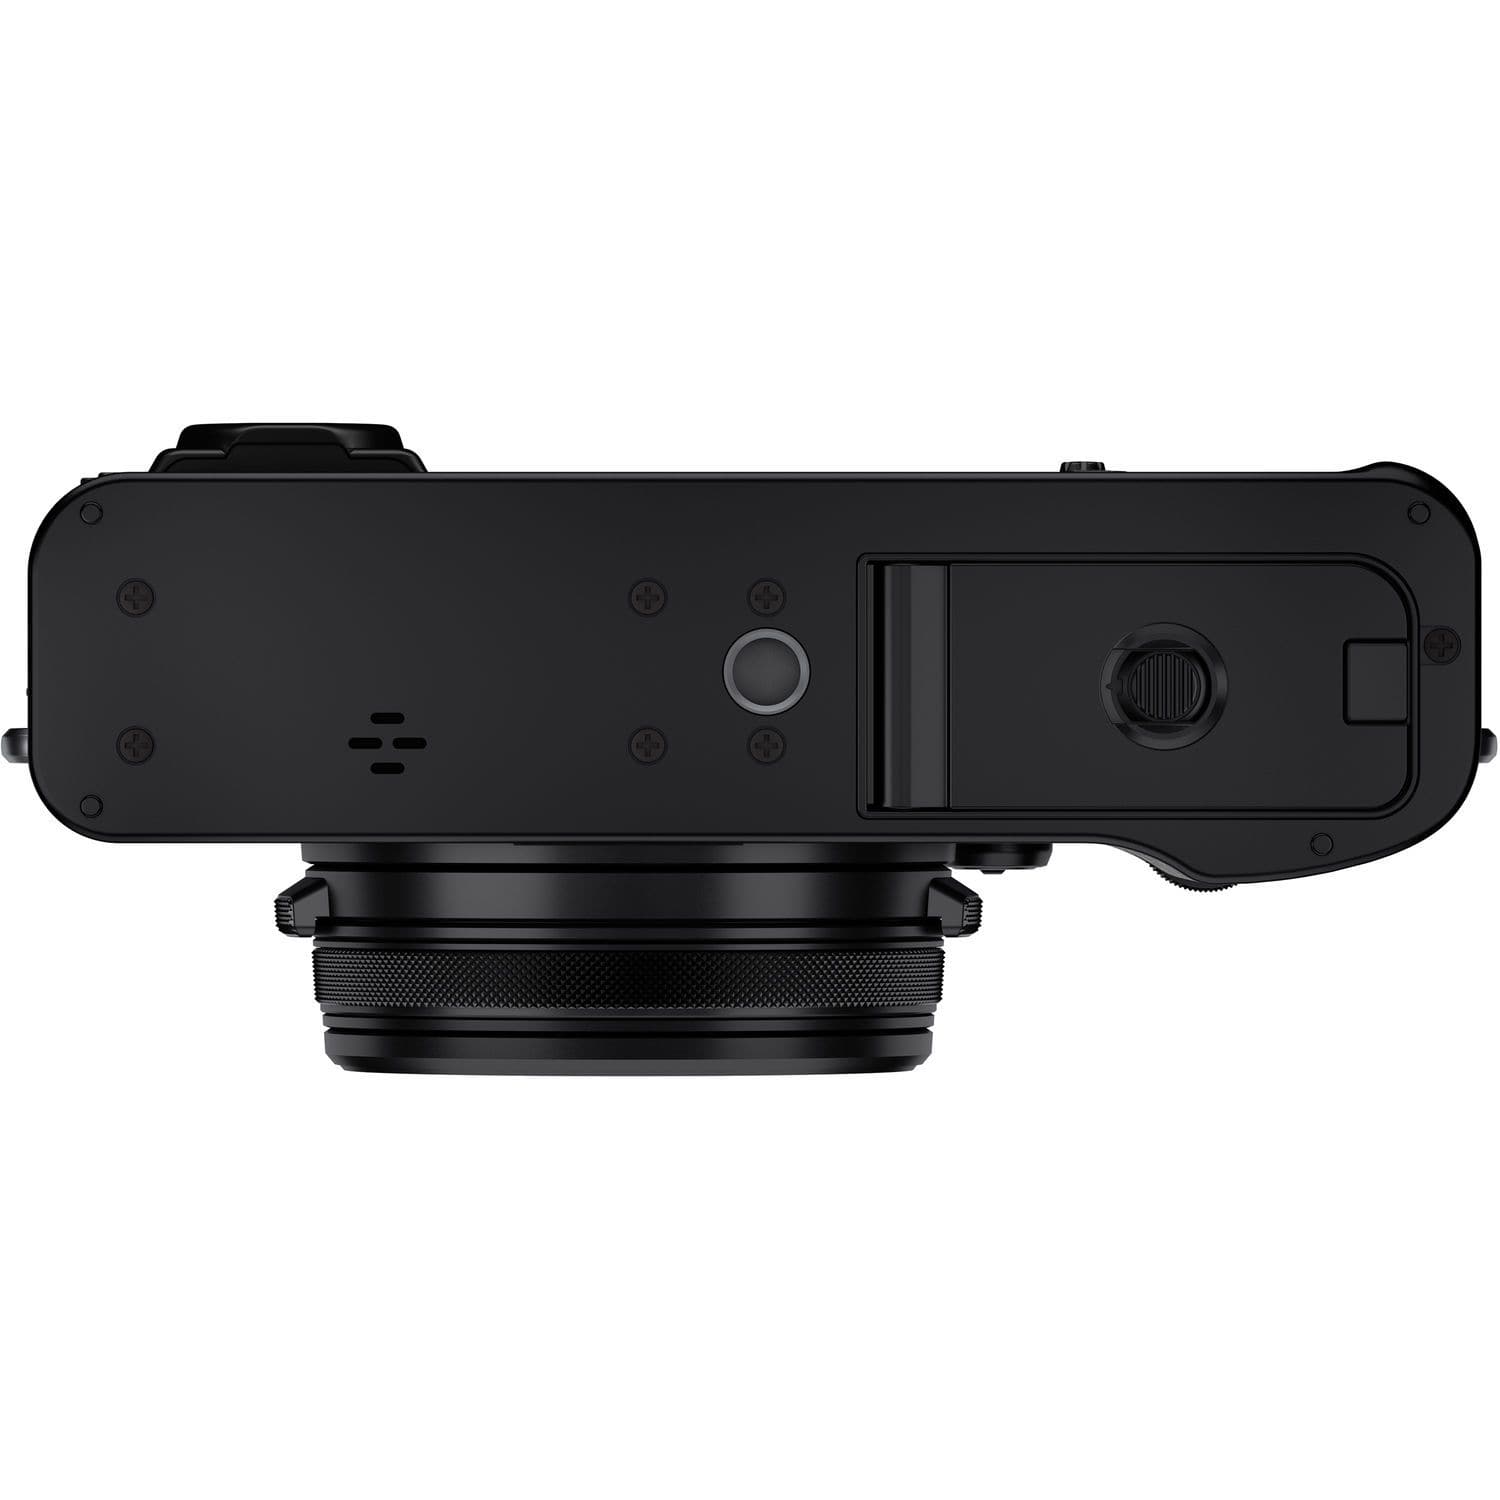 Caméra numérique Fujifilm X100V